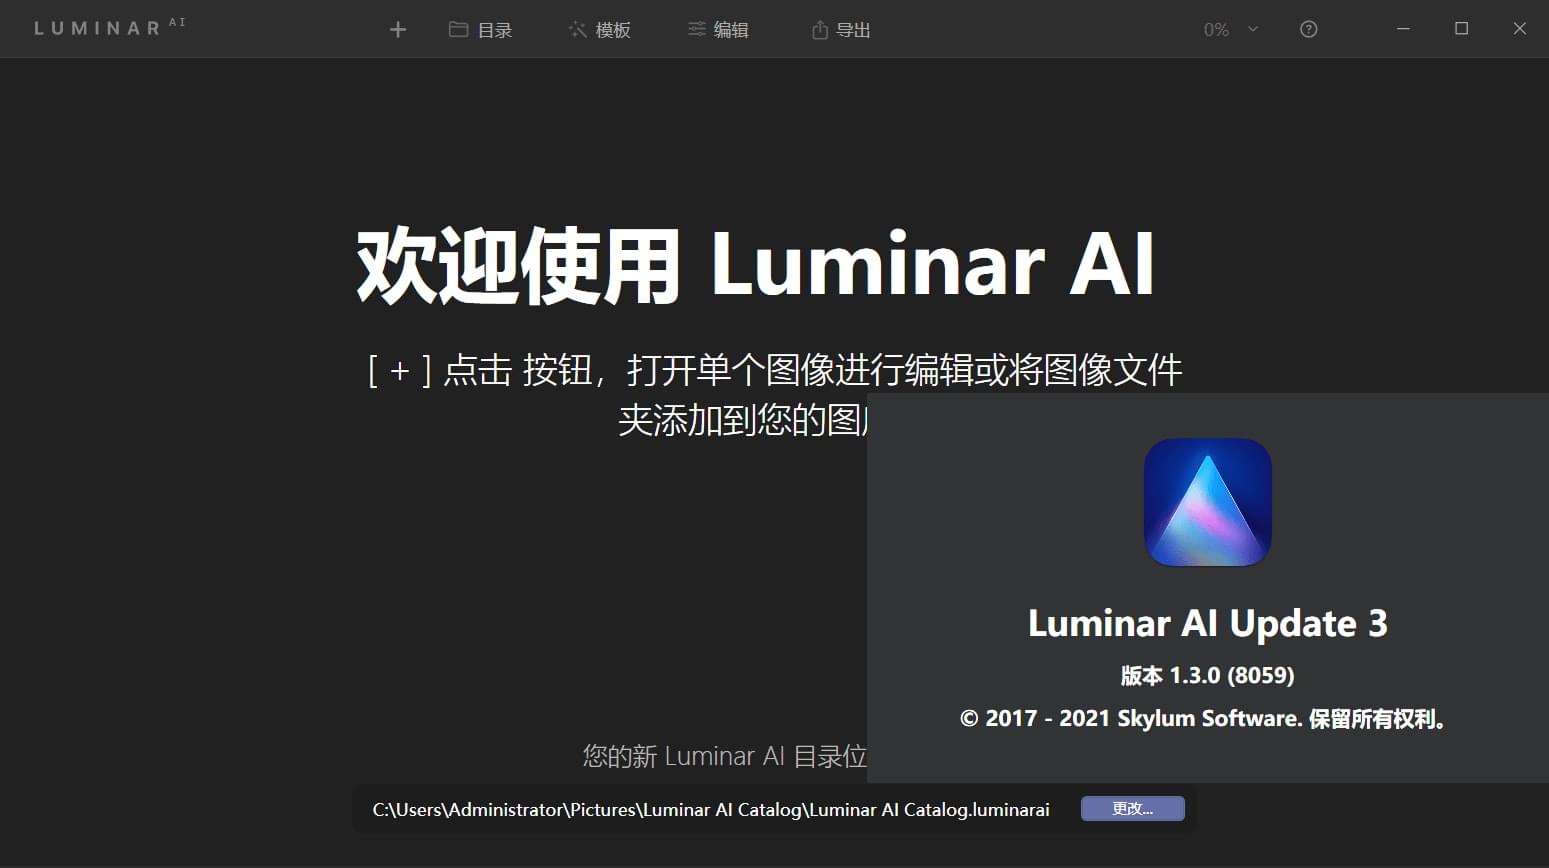 Luminar AI Update 5 v1.5.2(9370) Repack